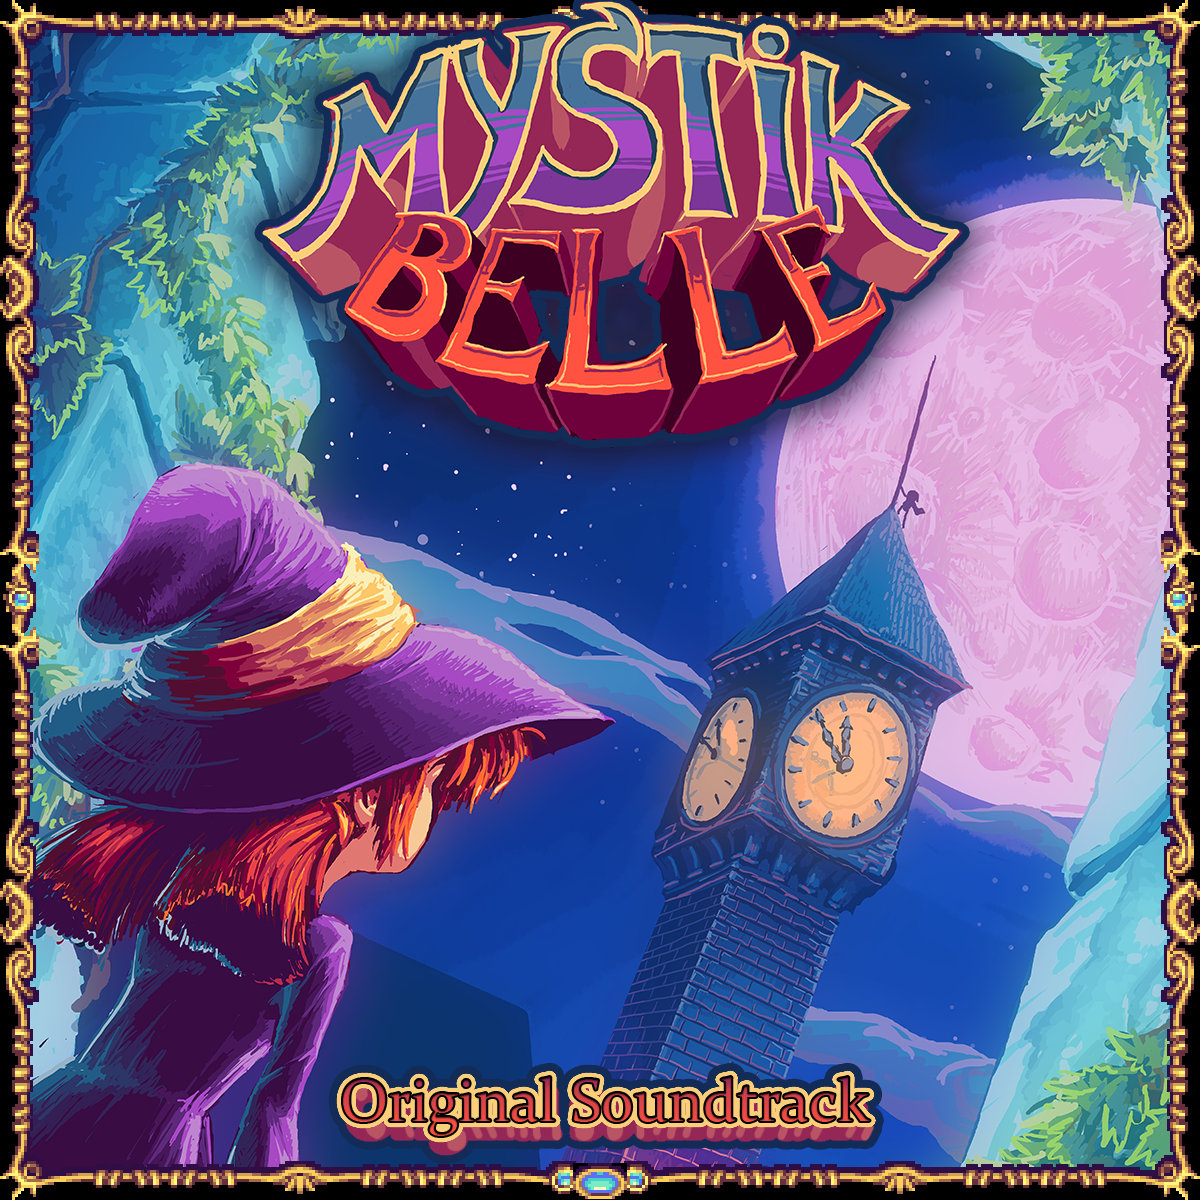 Mystik Belle #19